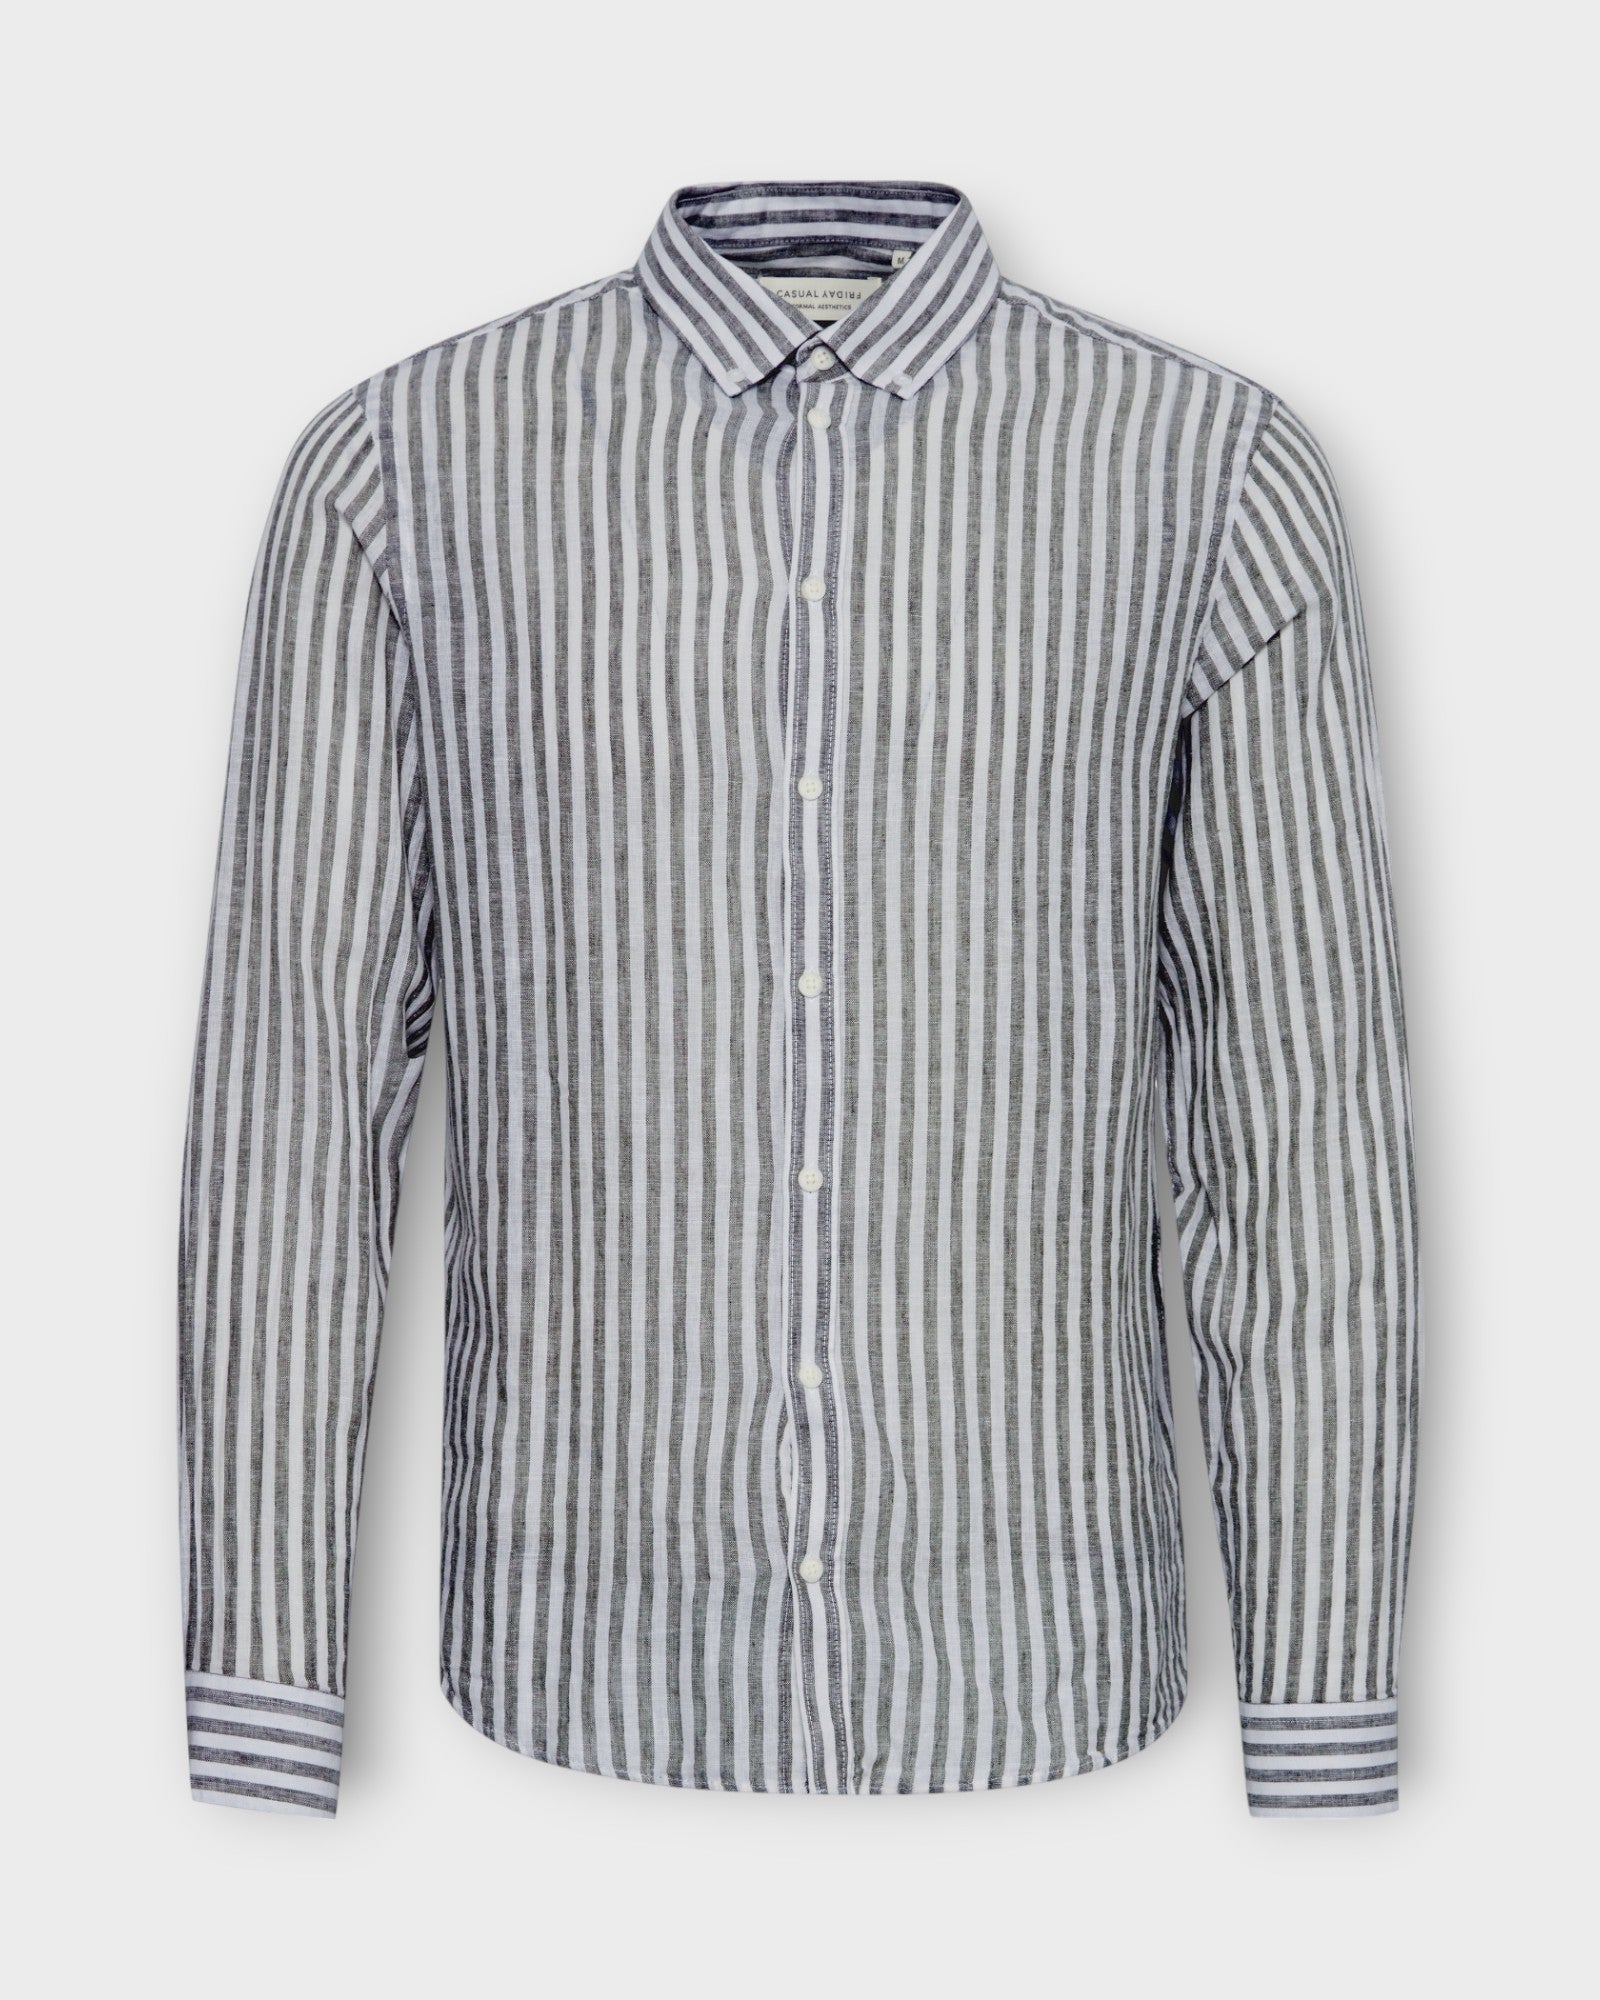 Anton Striped Linen Mix Shirt Dark Navy fra Casual Friday. Blå og hvid stribet langærmet hørskjorte til mænd. Her set forfra.